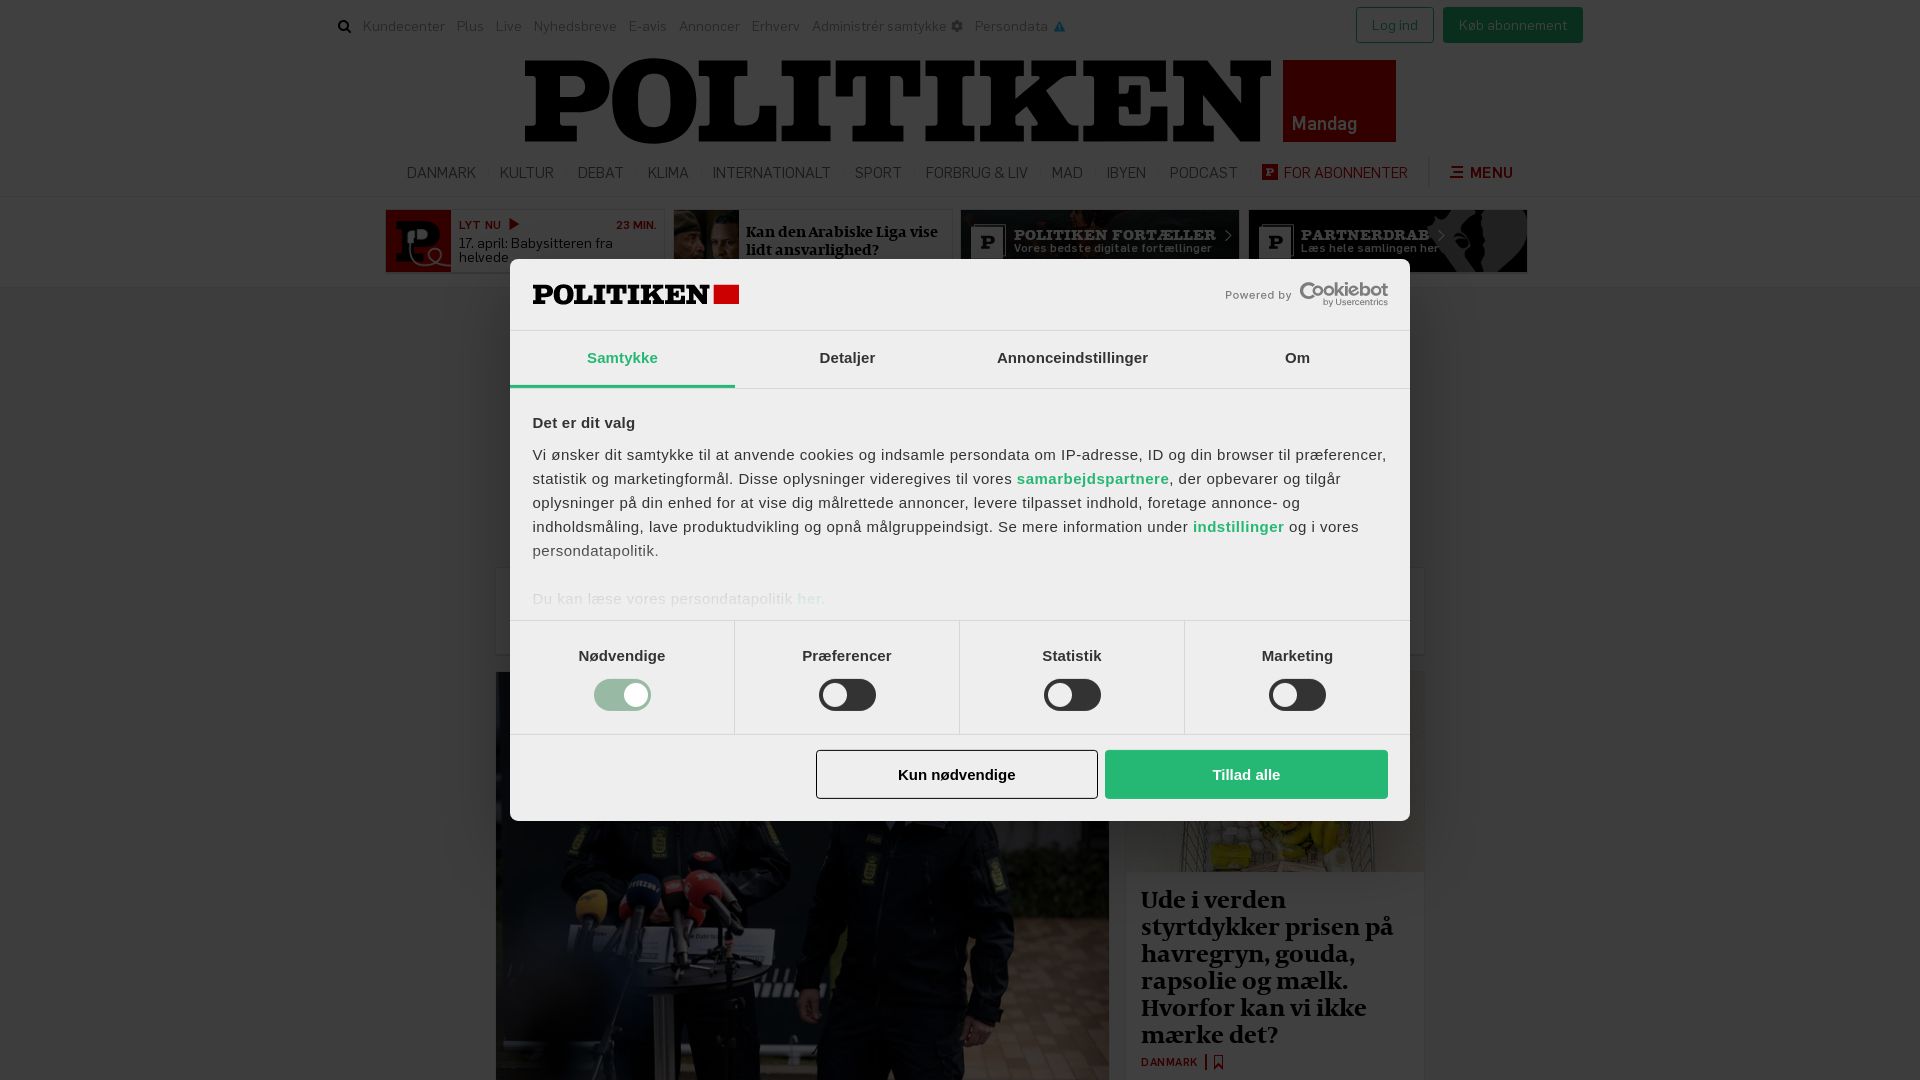 Estado web politiken.dk está   ONLINE